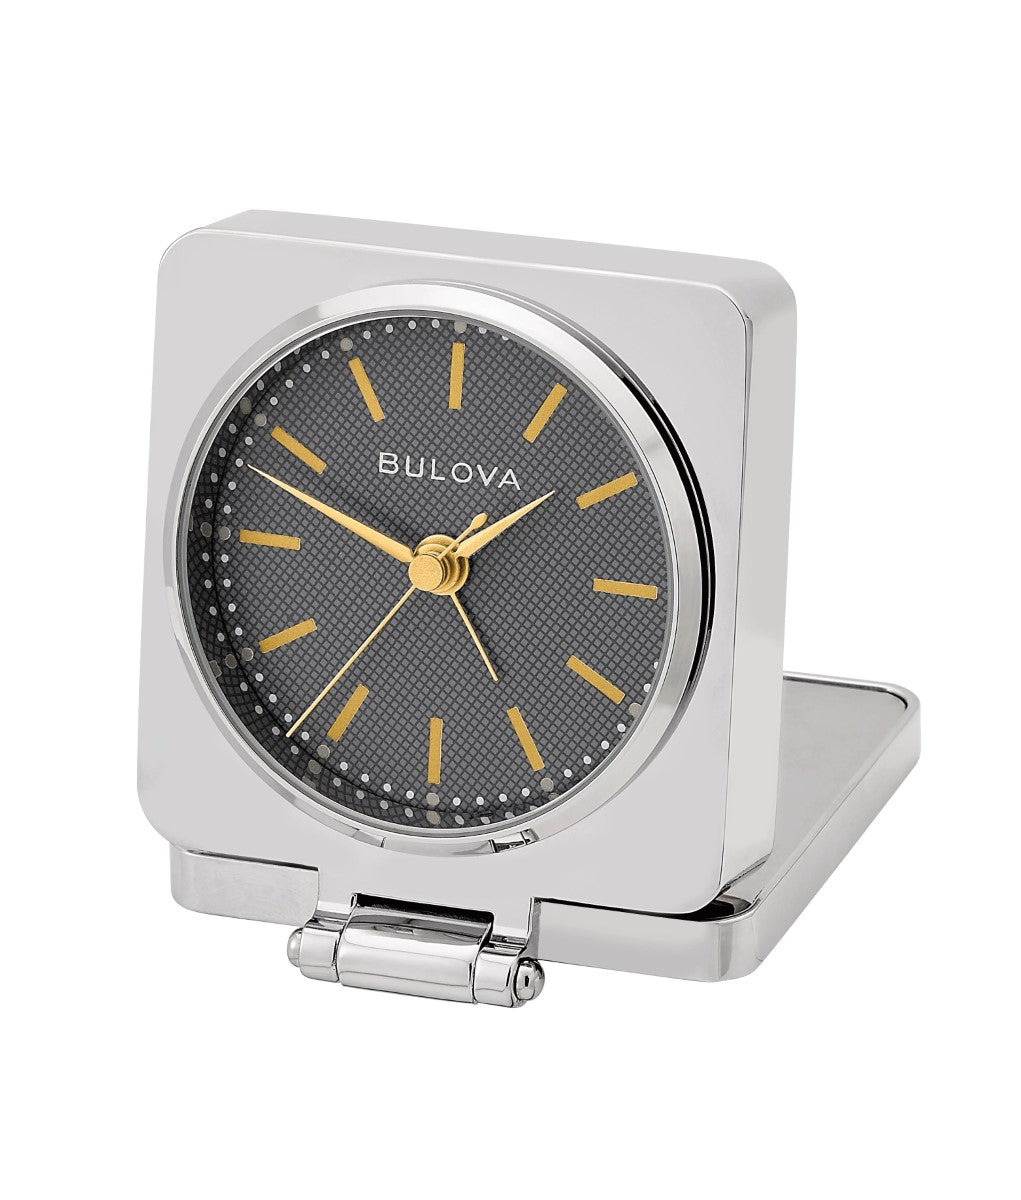 Bulova B1879 Traveler Flip Cover Tabletop Alarm Clock